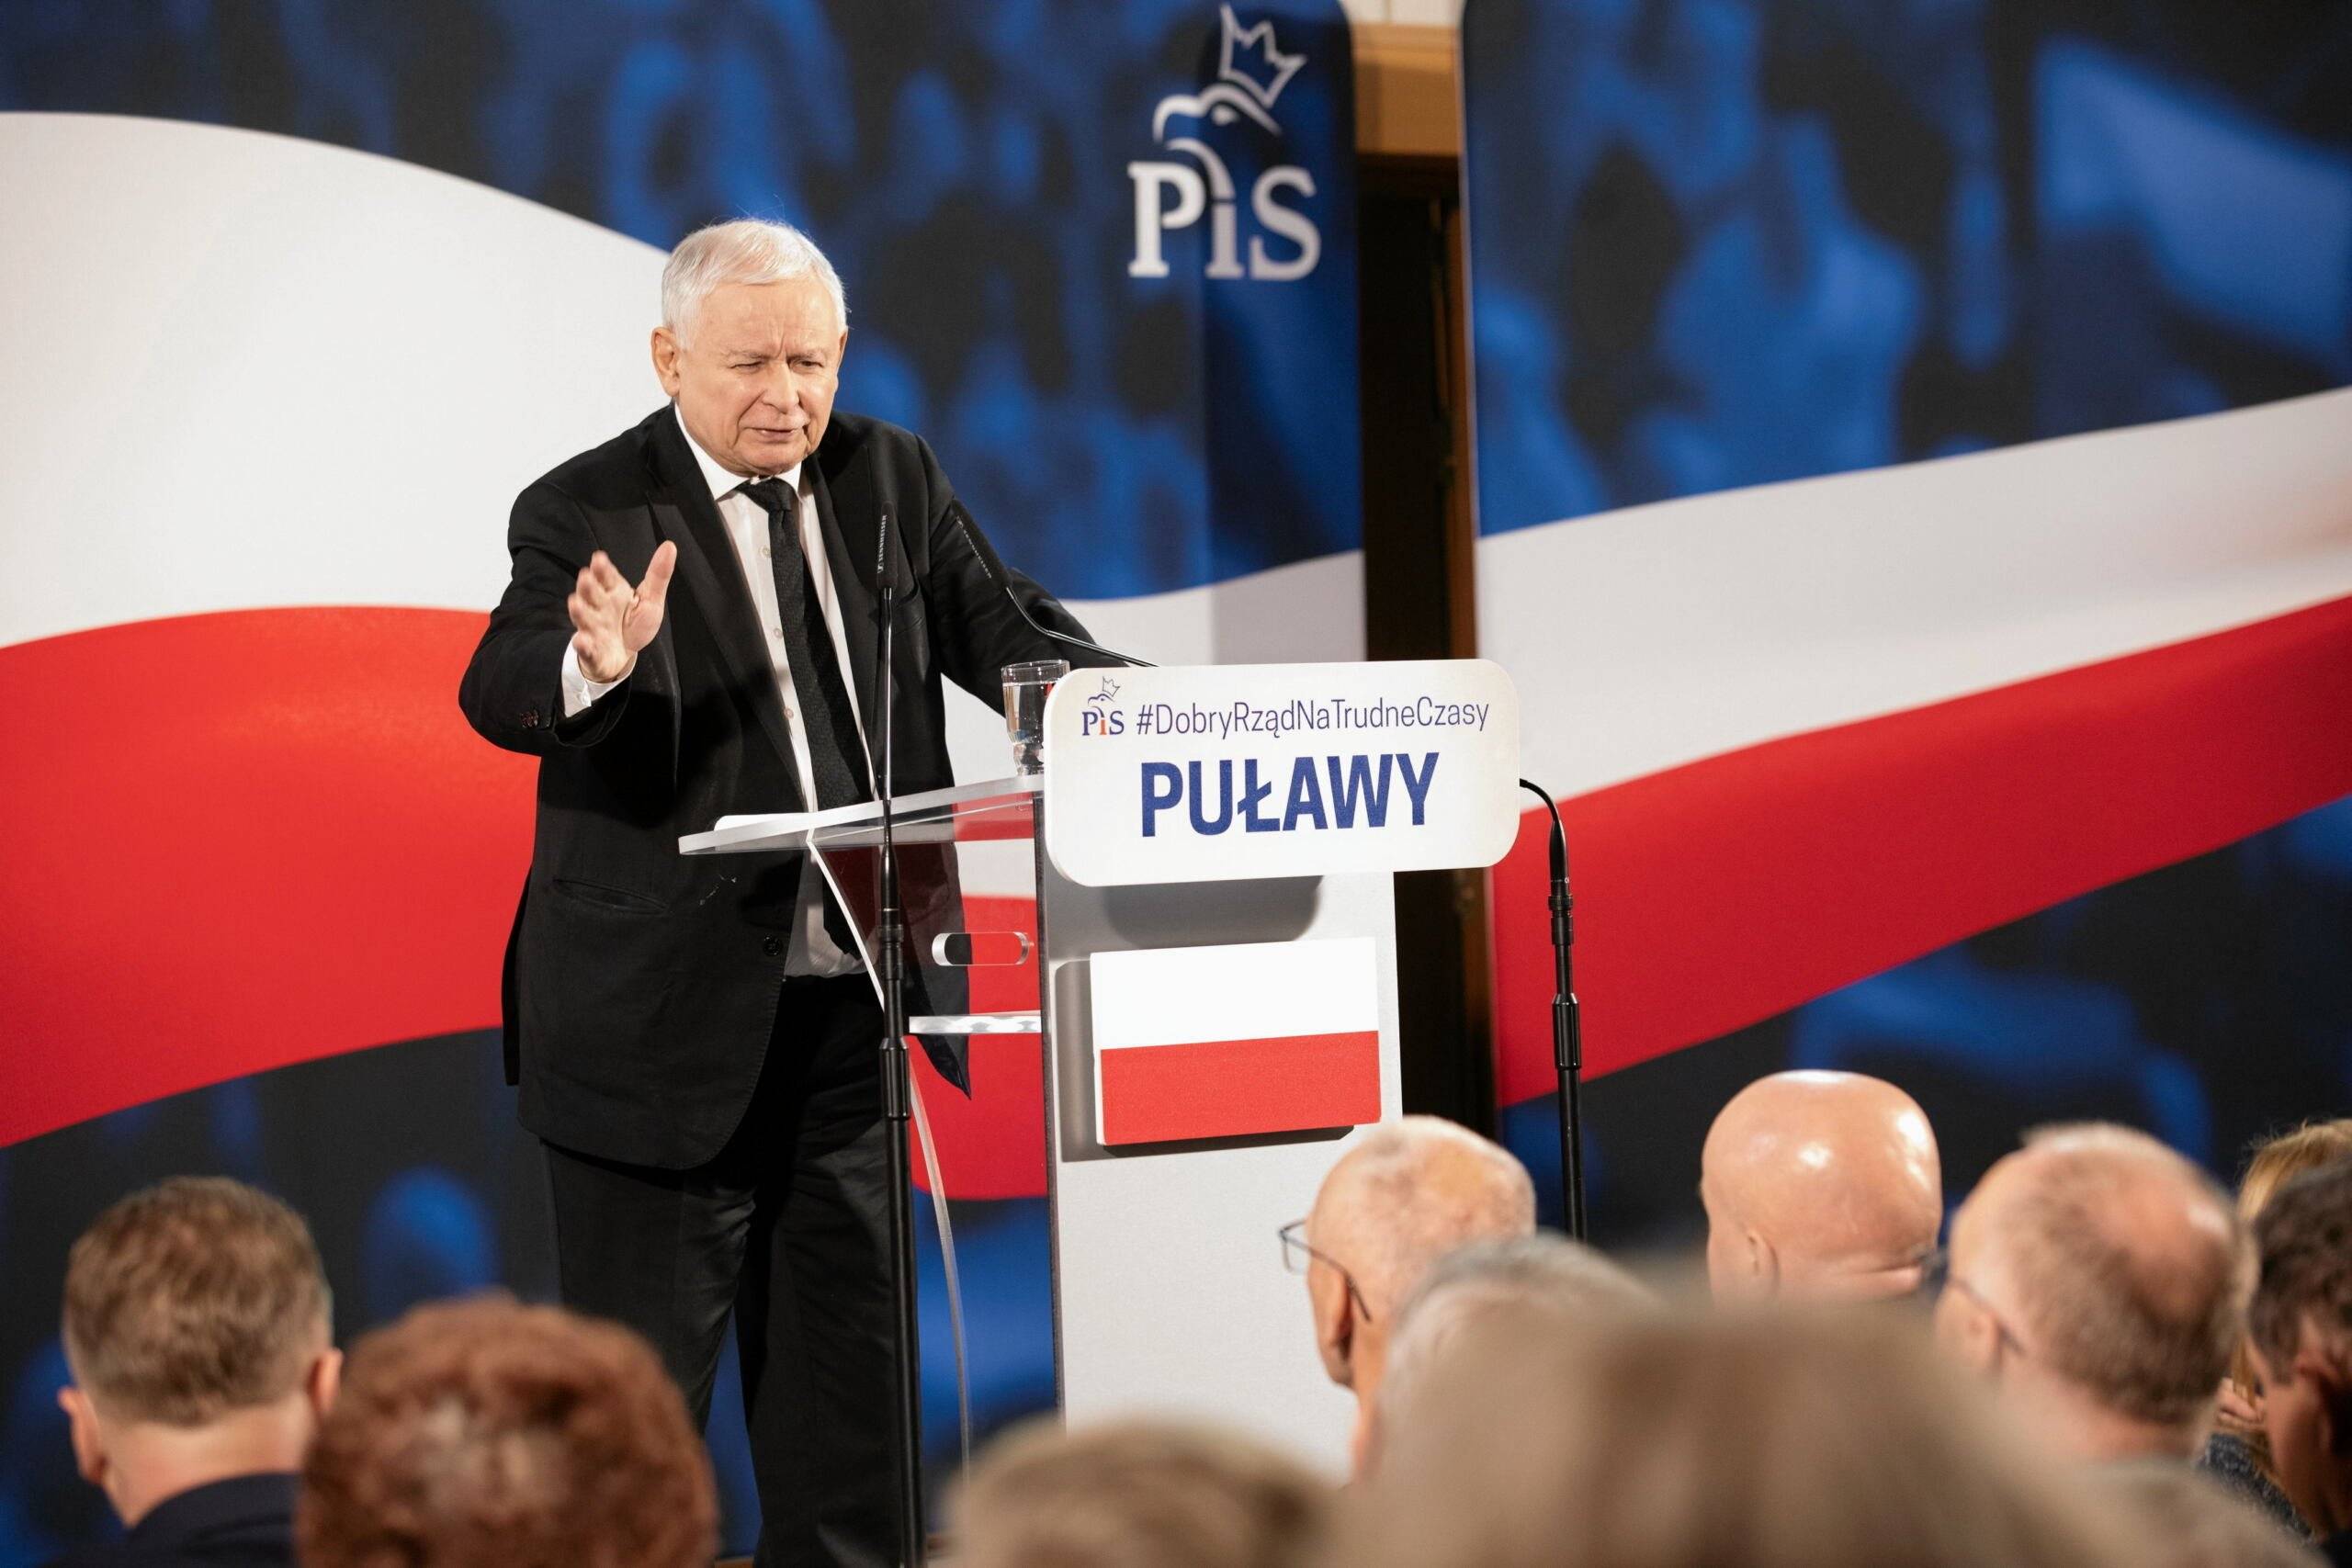 Prezes PiS Jarosław Kaczyński stoi za mównicą z napisem Puławy